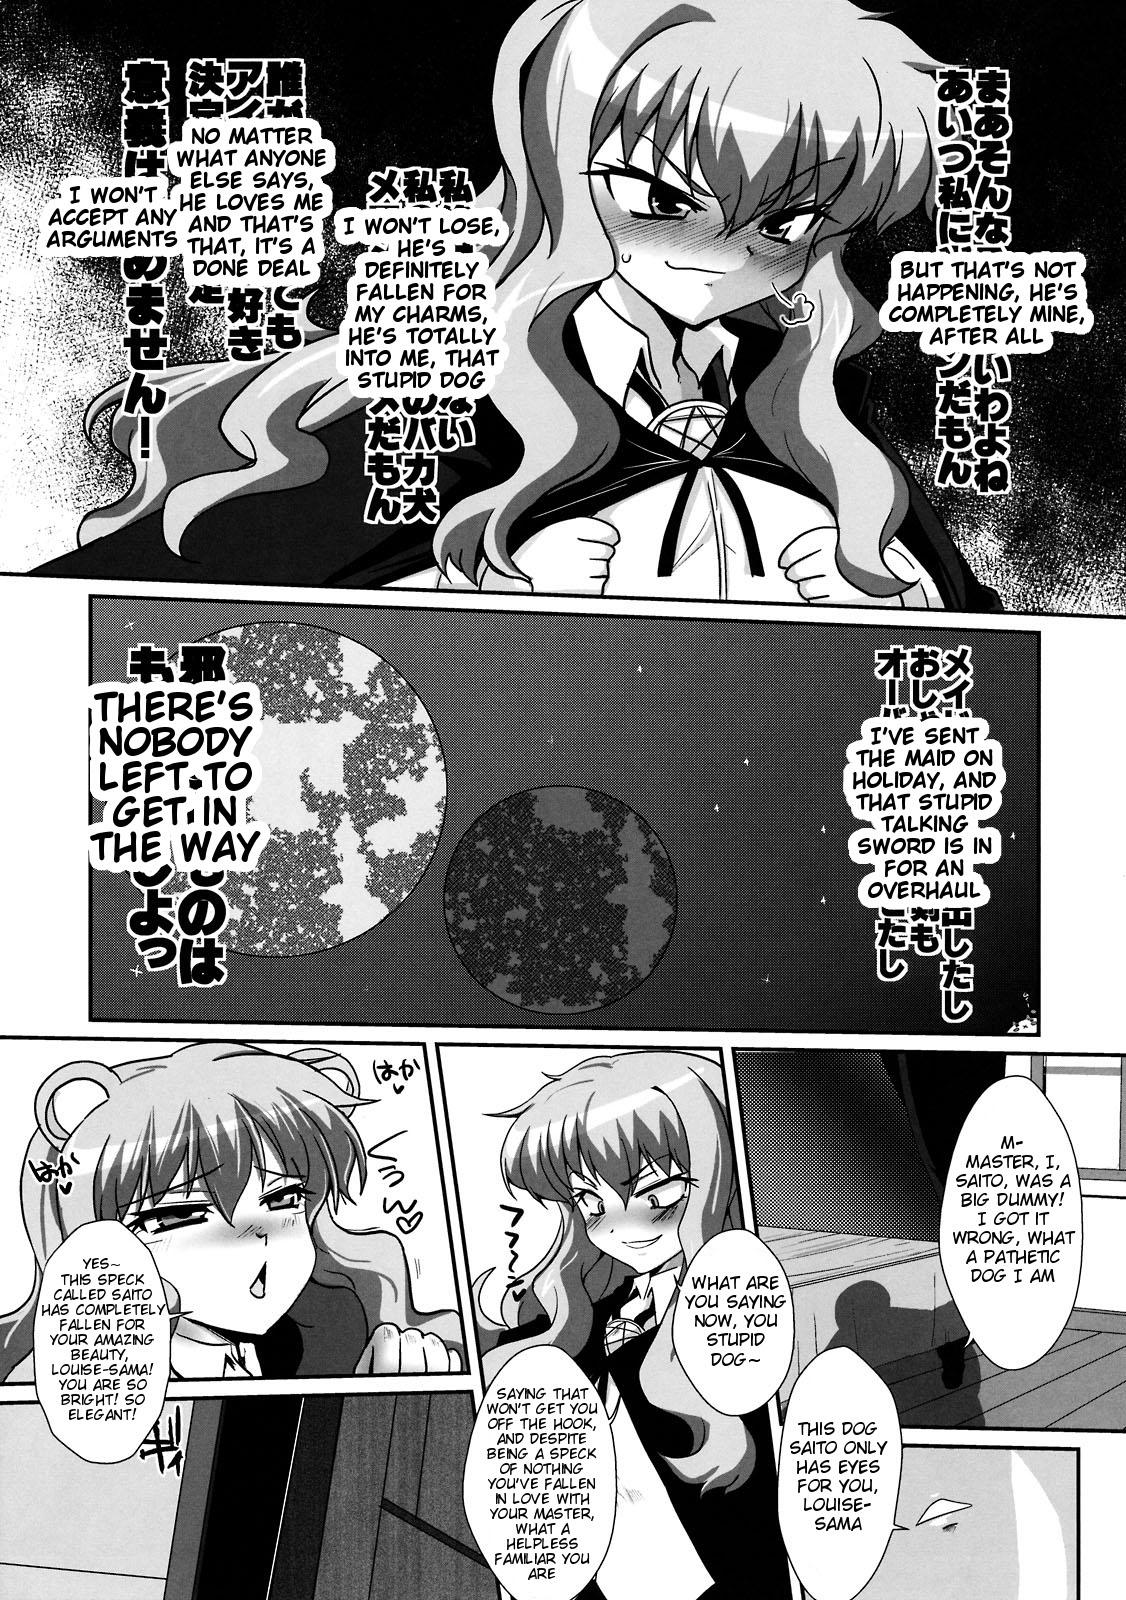 Mas Kouda no Goshujin-sama - Zero no tsukaima Gets - Page 6